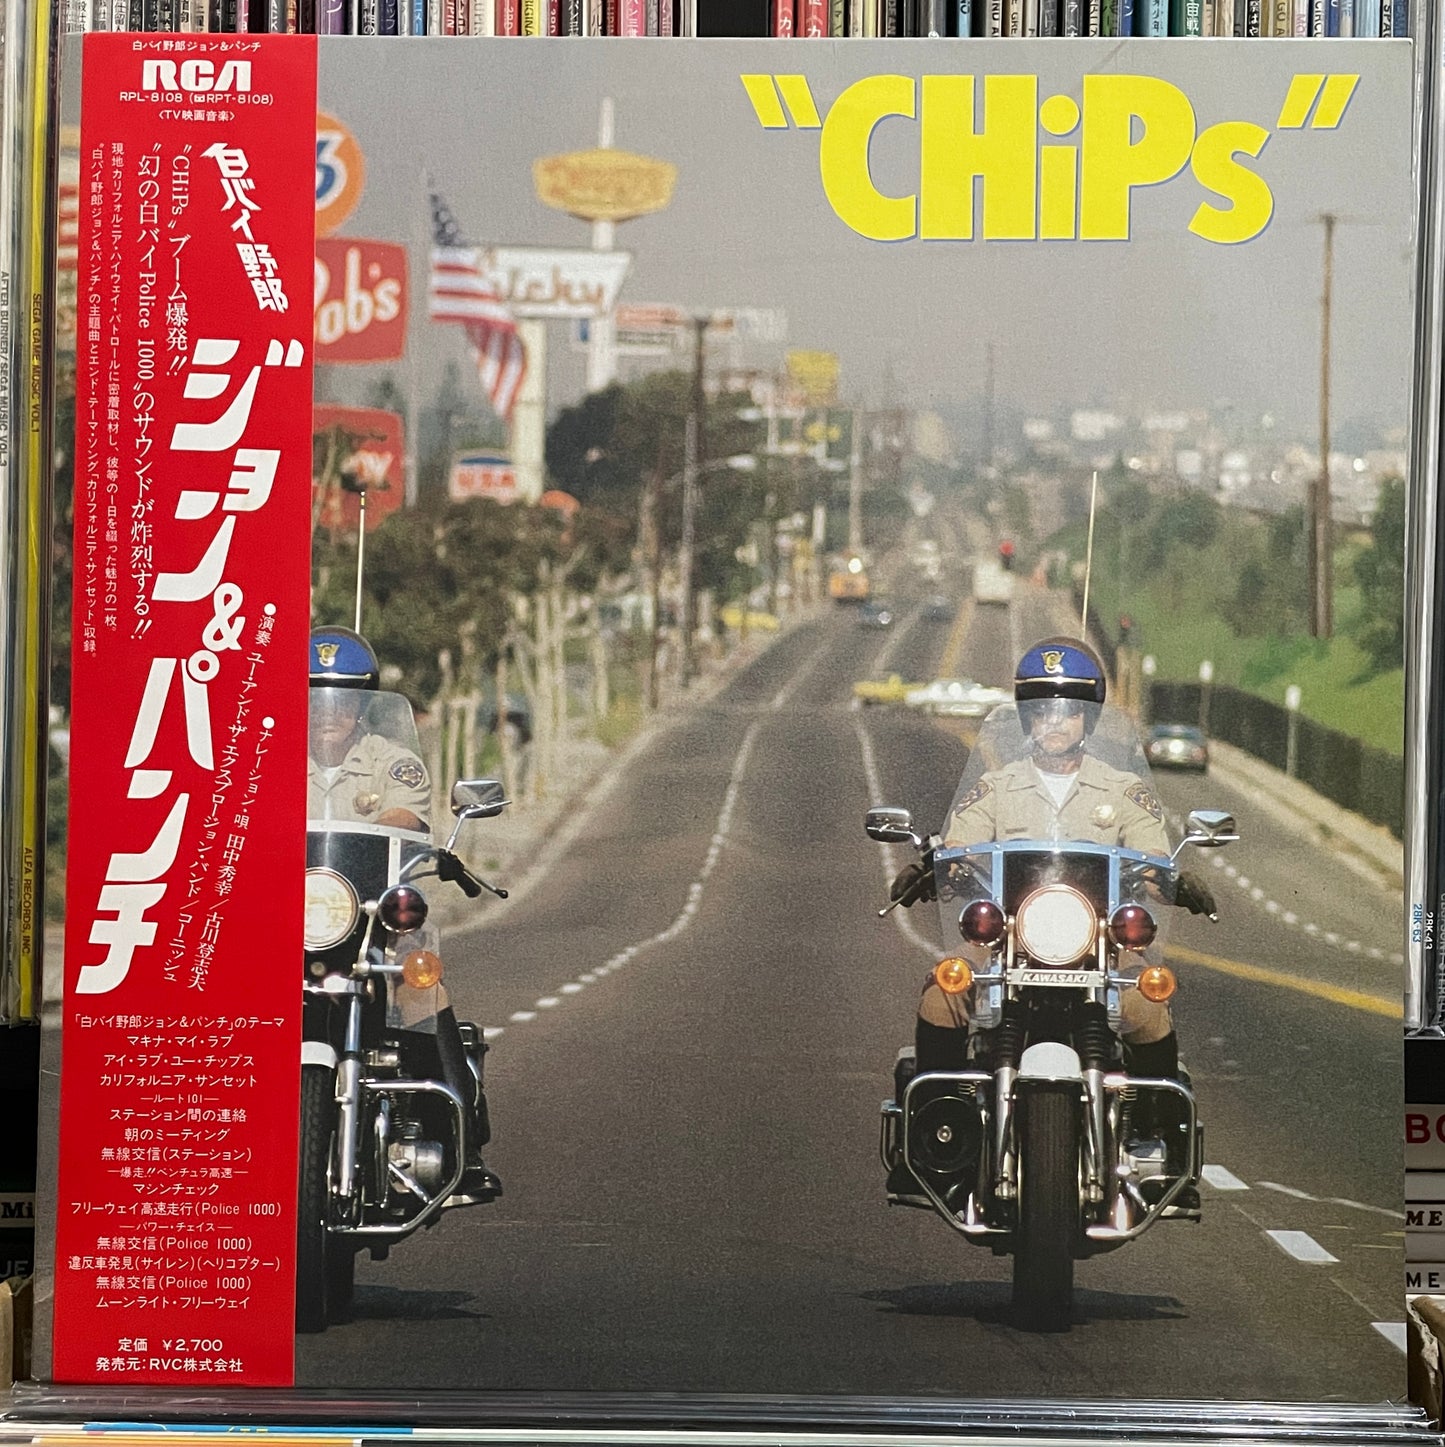 Yuji Ohno “CHiPs” (1981)